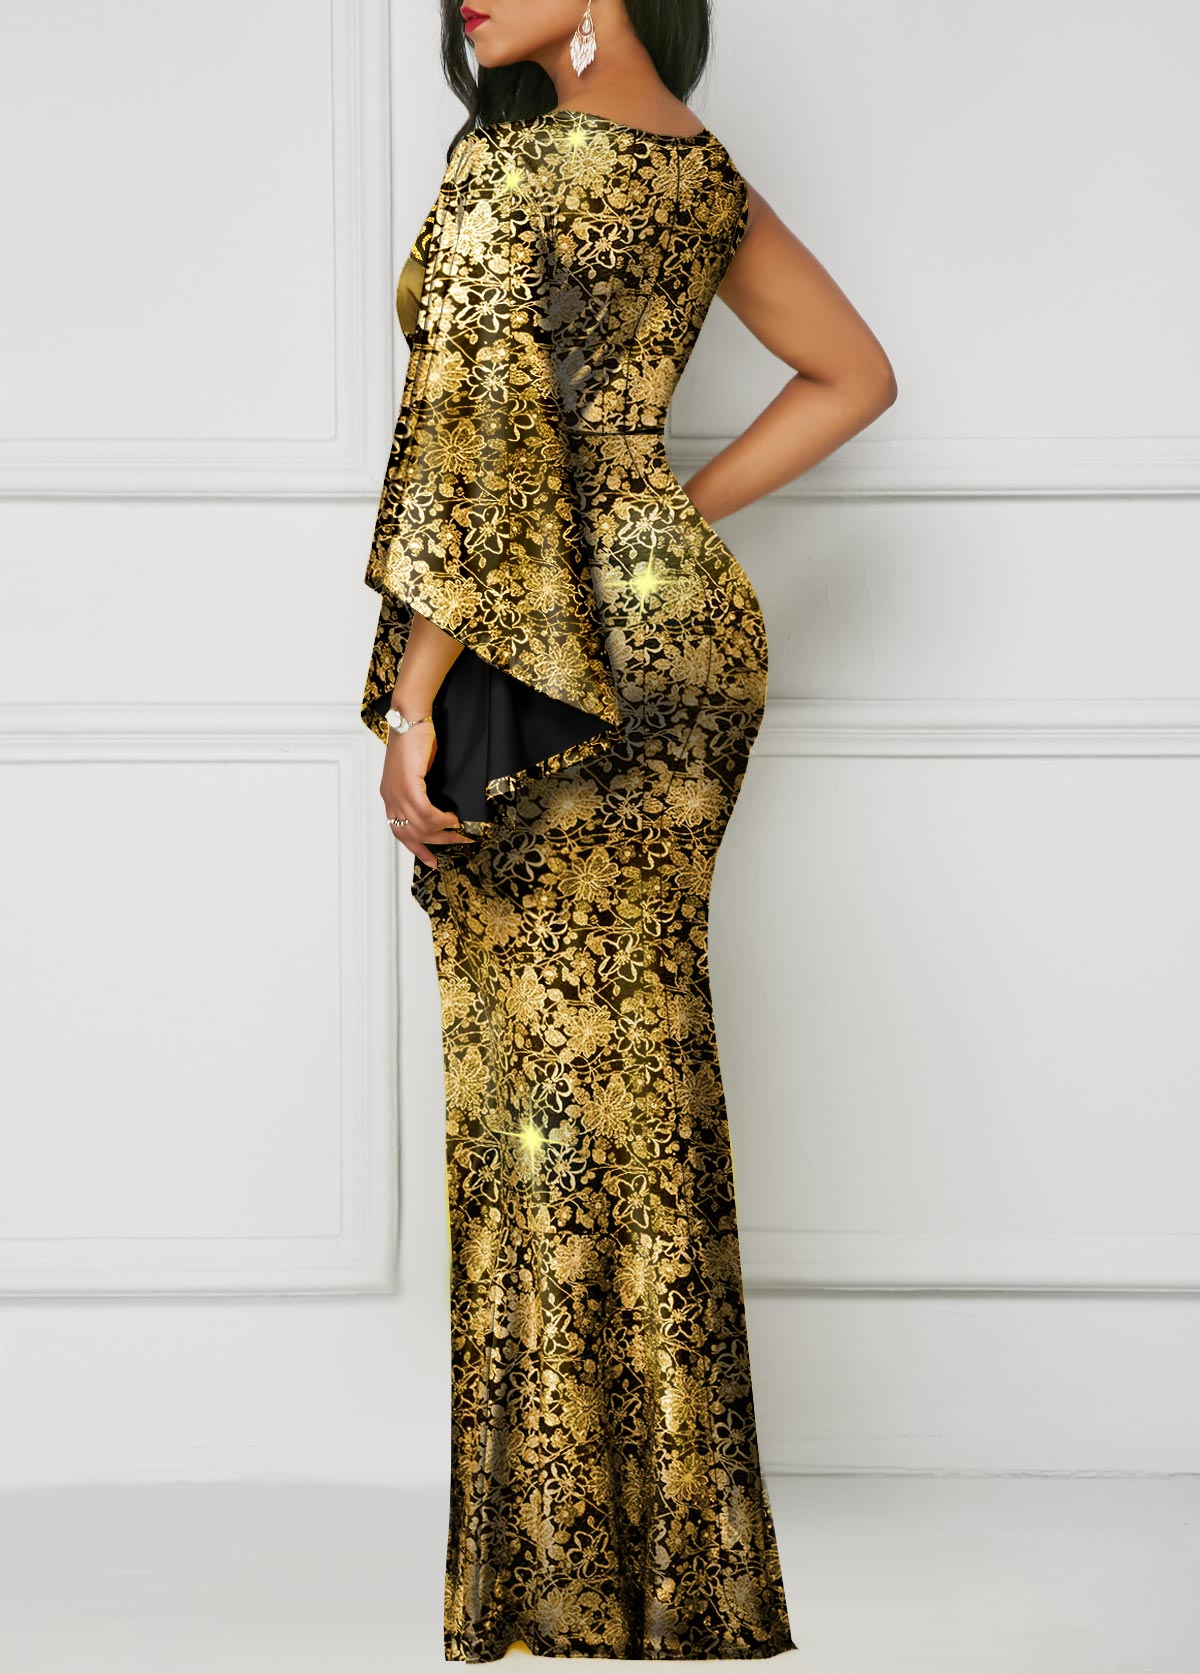 Floral Print Hot Stamping Golden Side Slit Dress